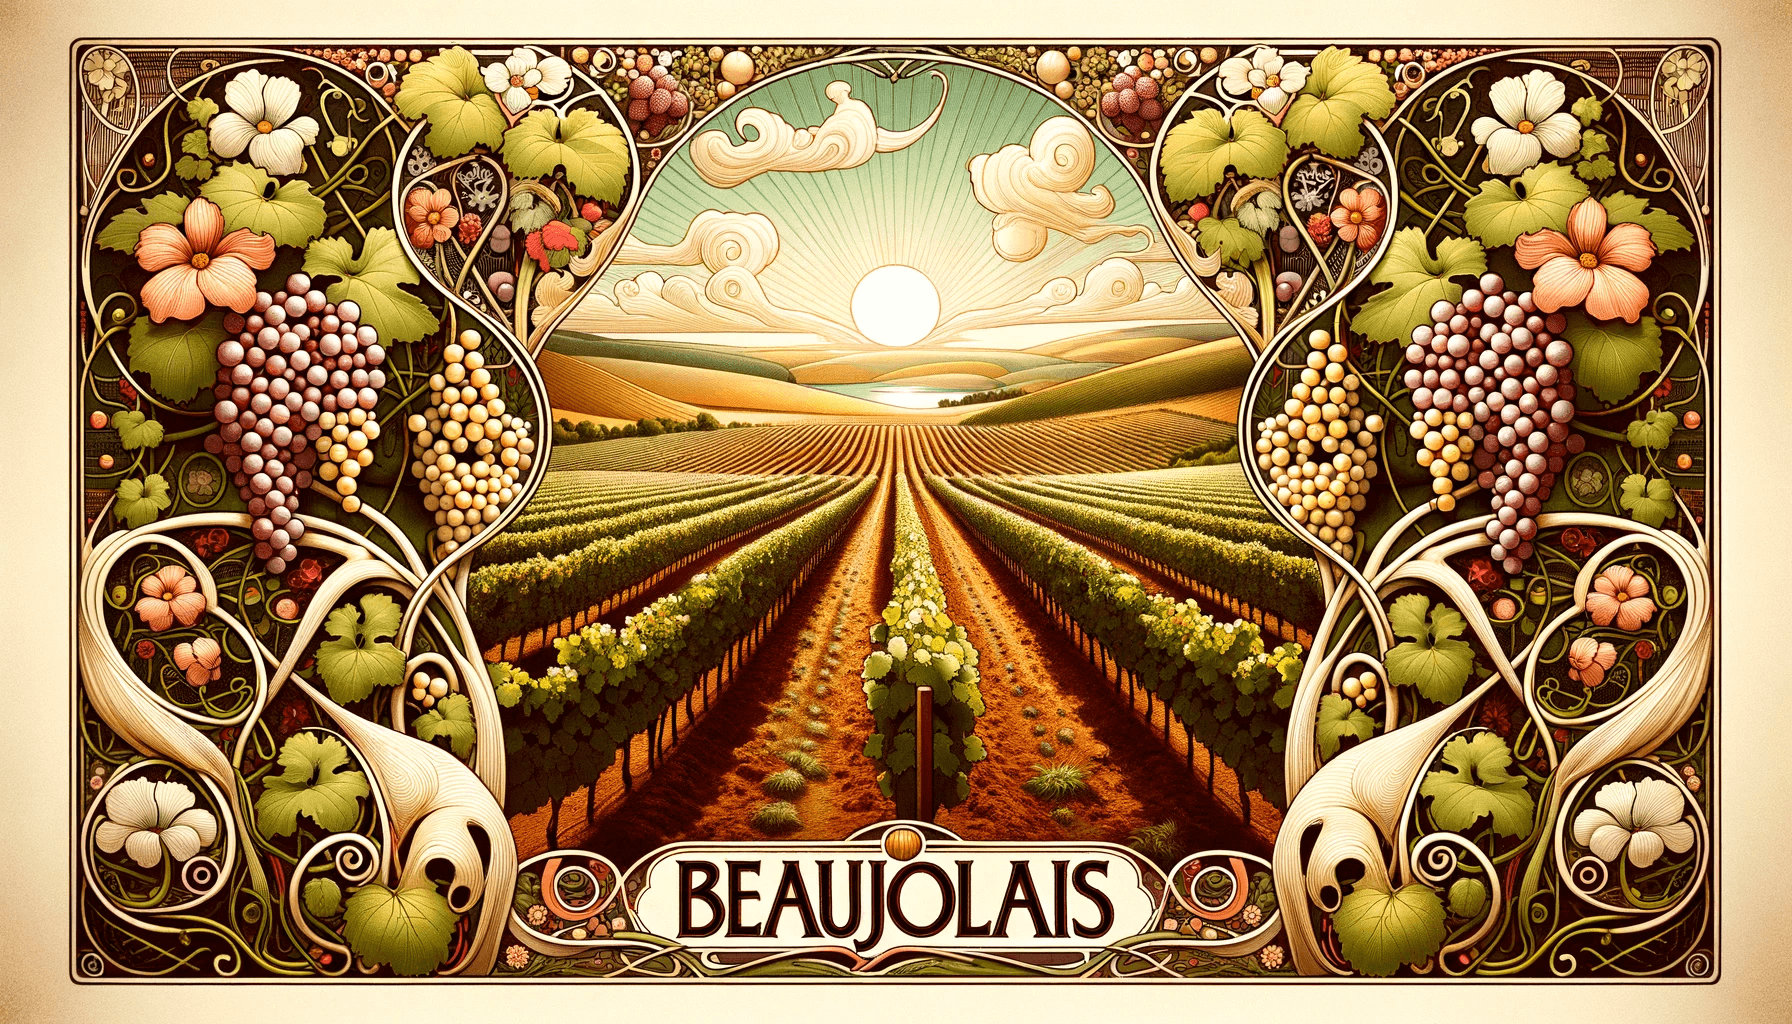 vins-beaujolais-autour-d-un-verre-illustration-art-nouveau